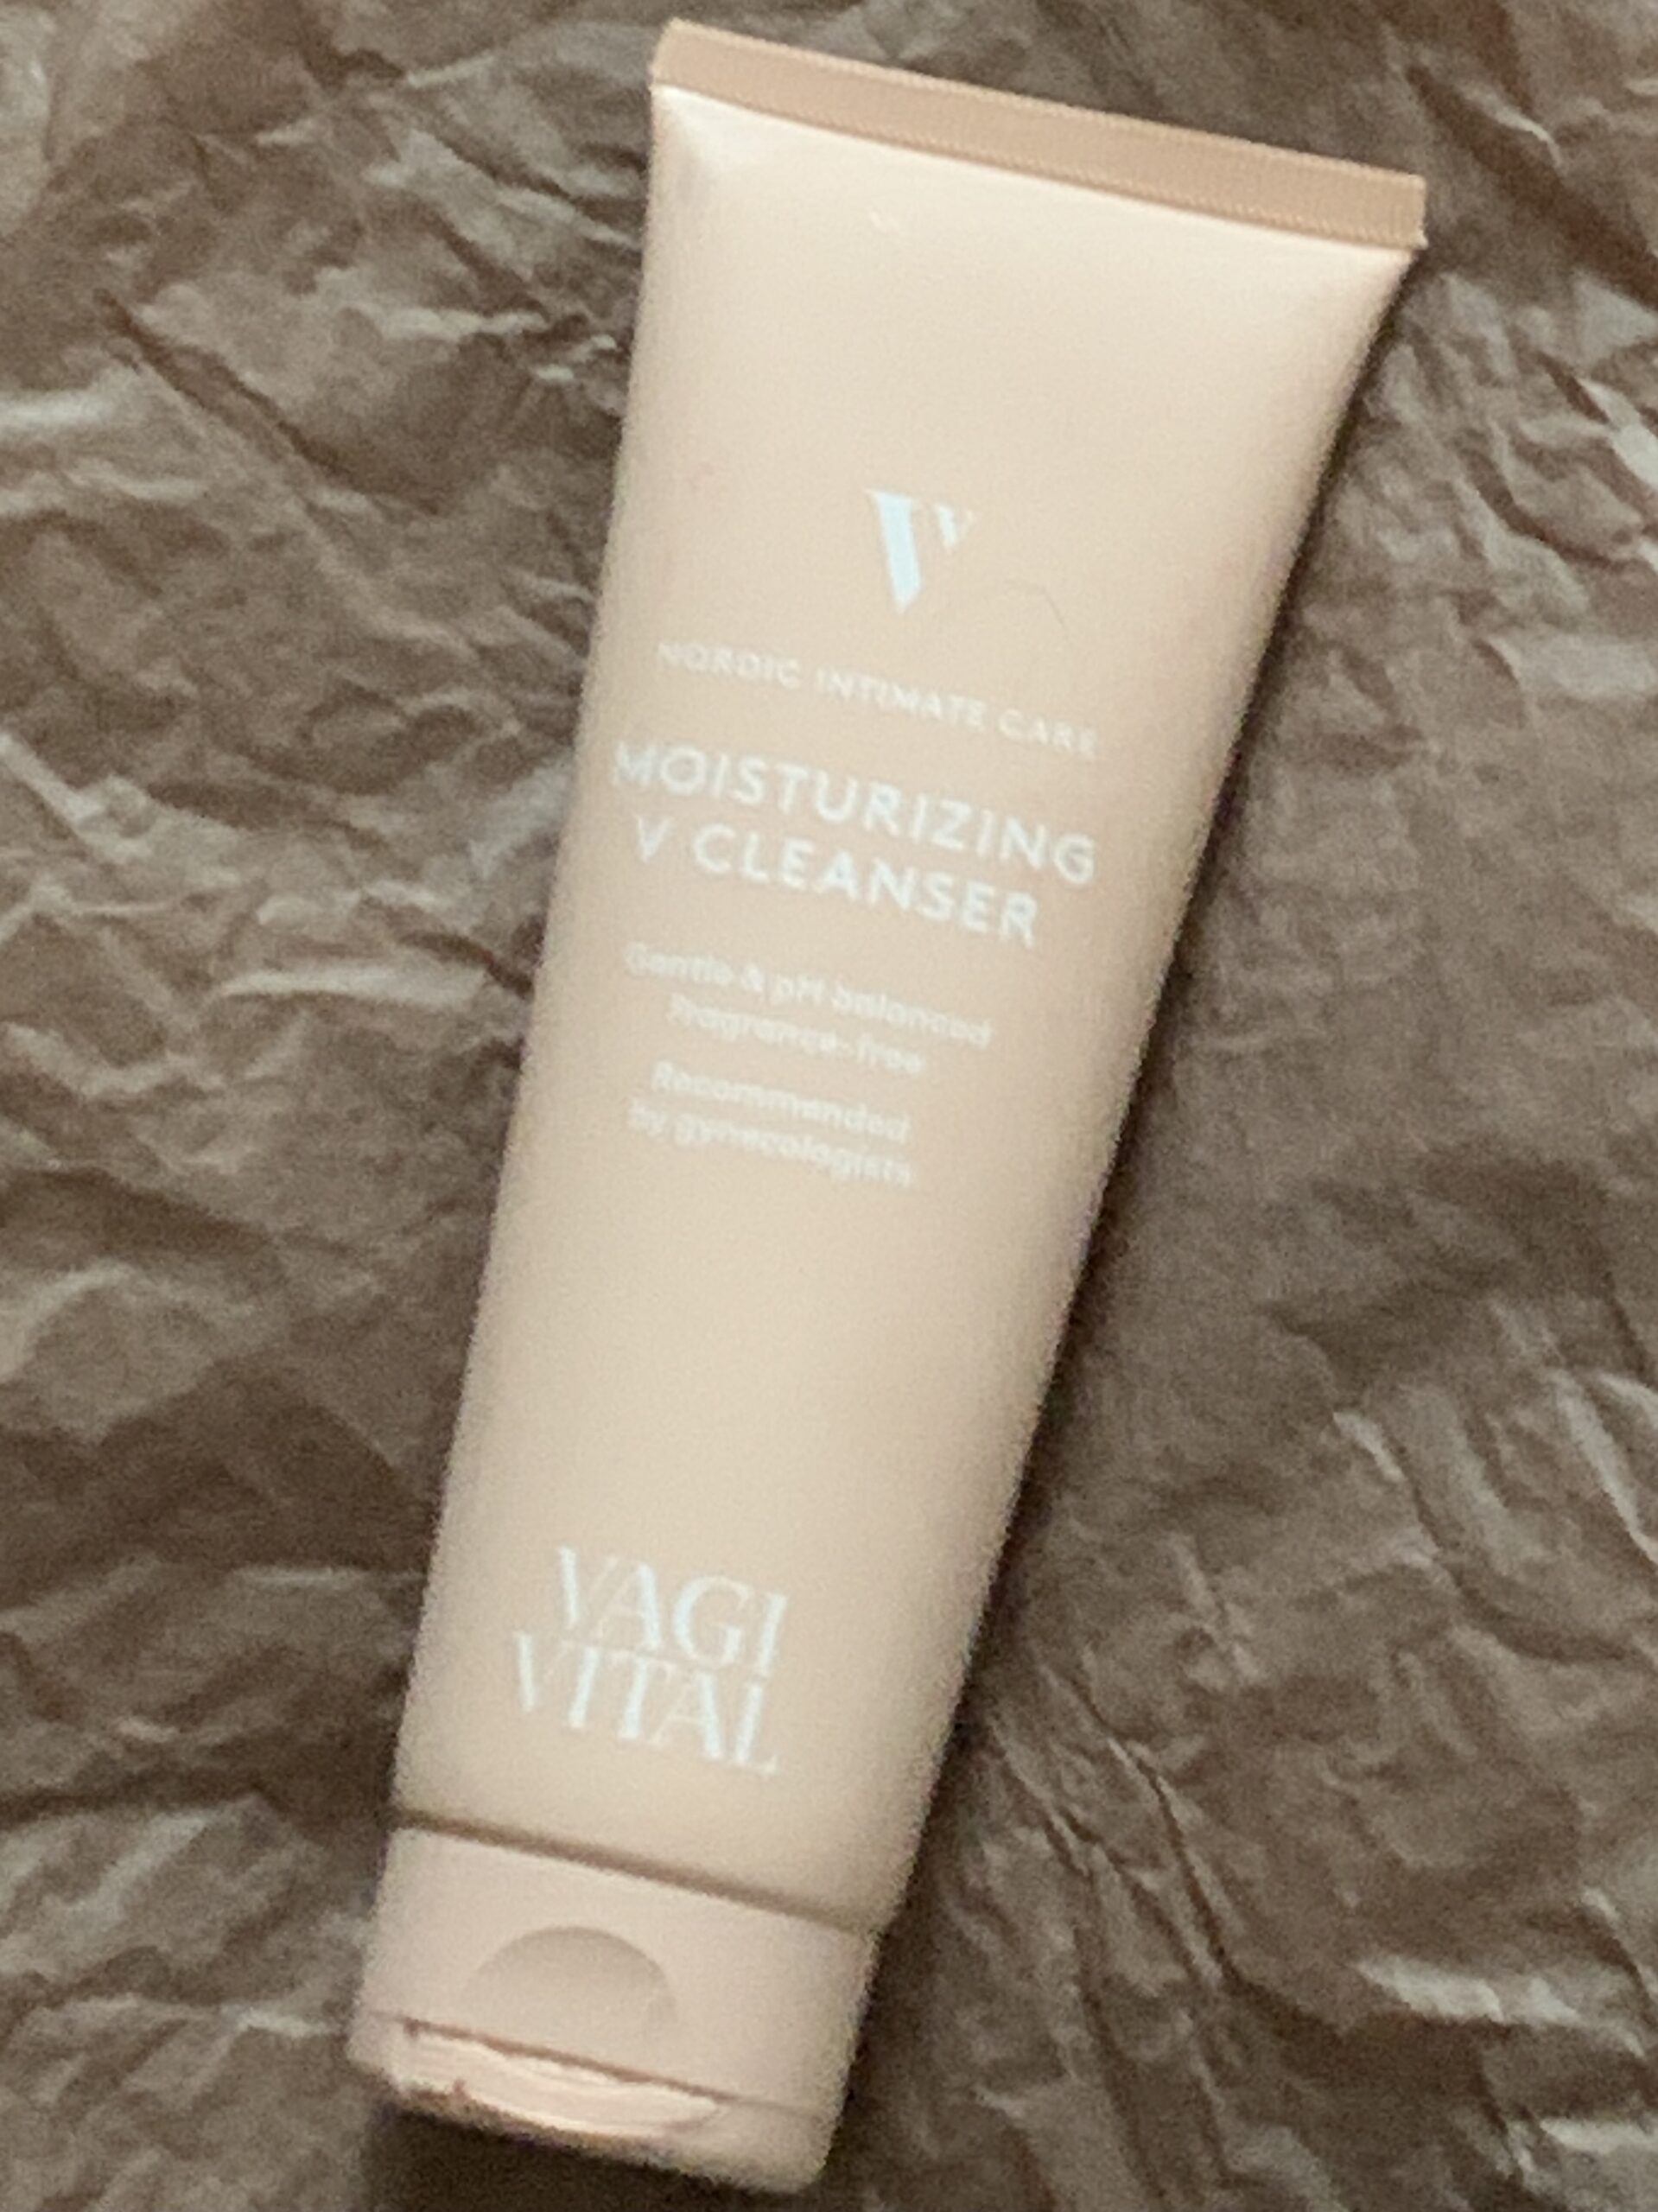 Vagivital moisturizing v cleanser